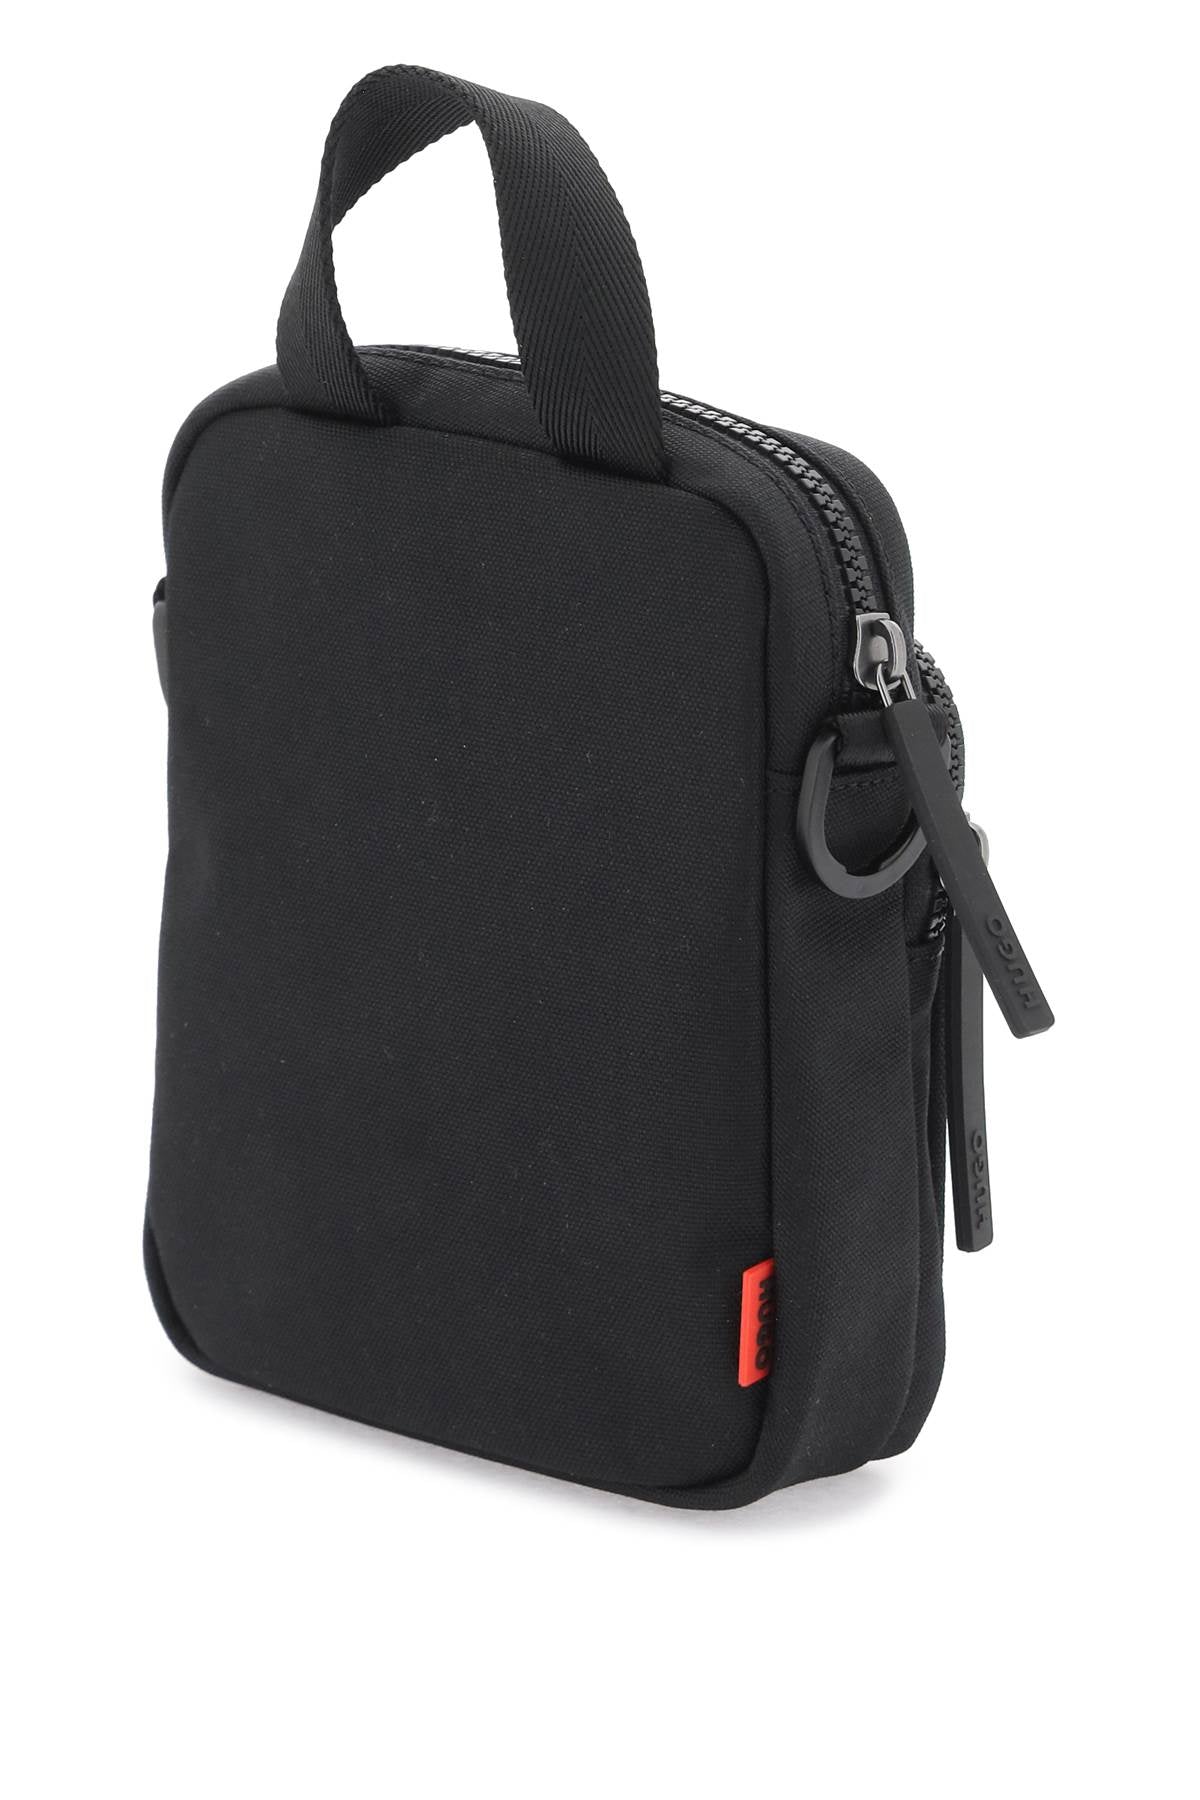 Hugo nylon shoulder bag with adjustable strap-1